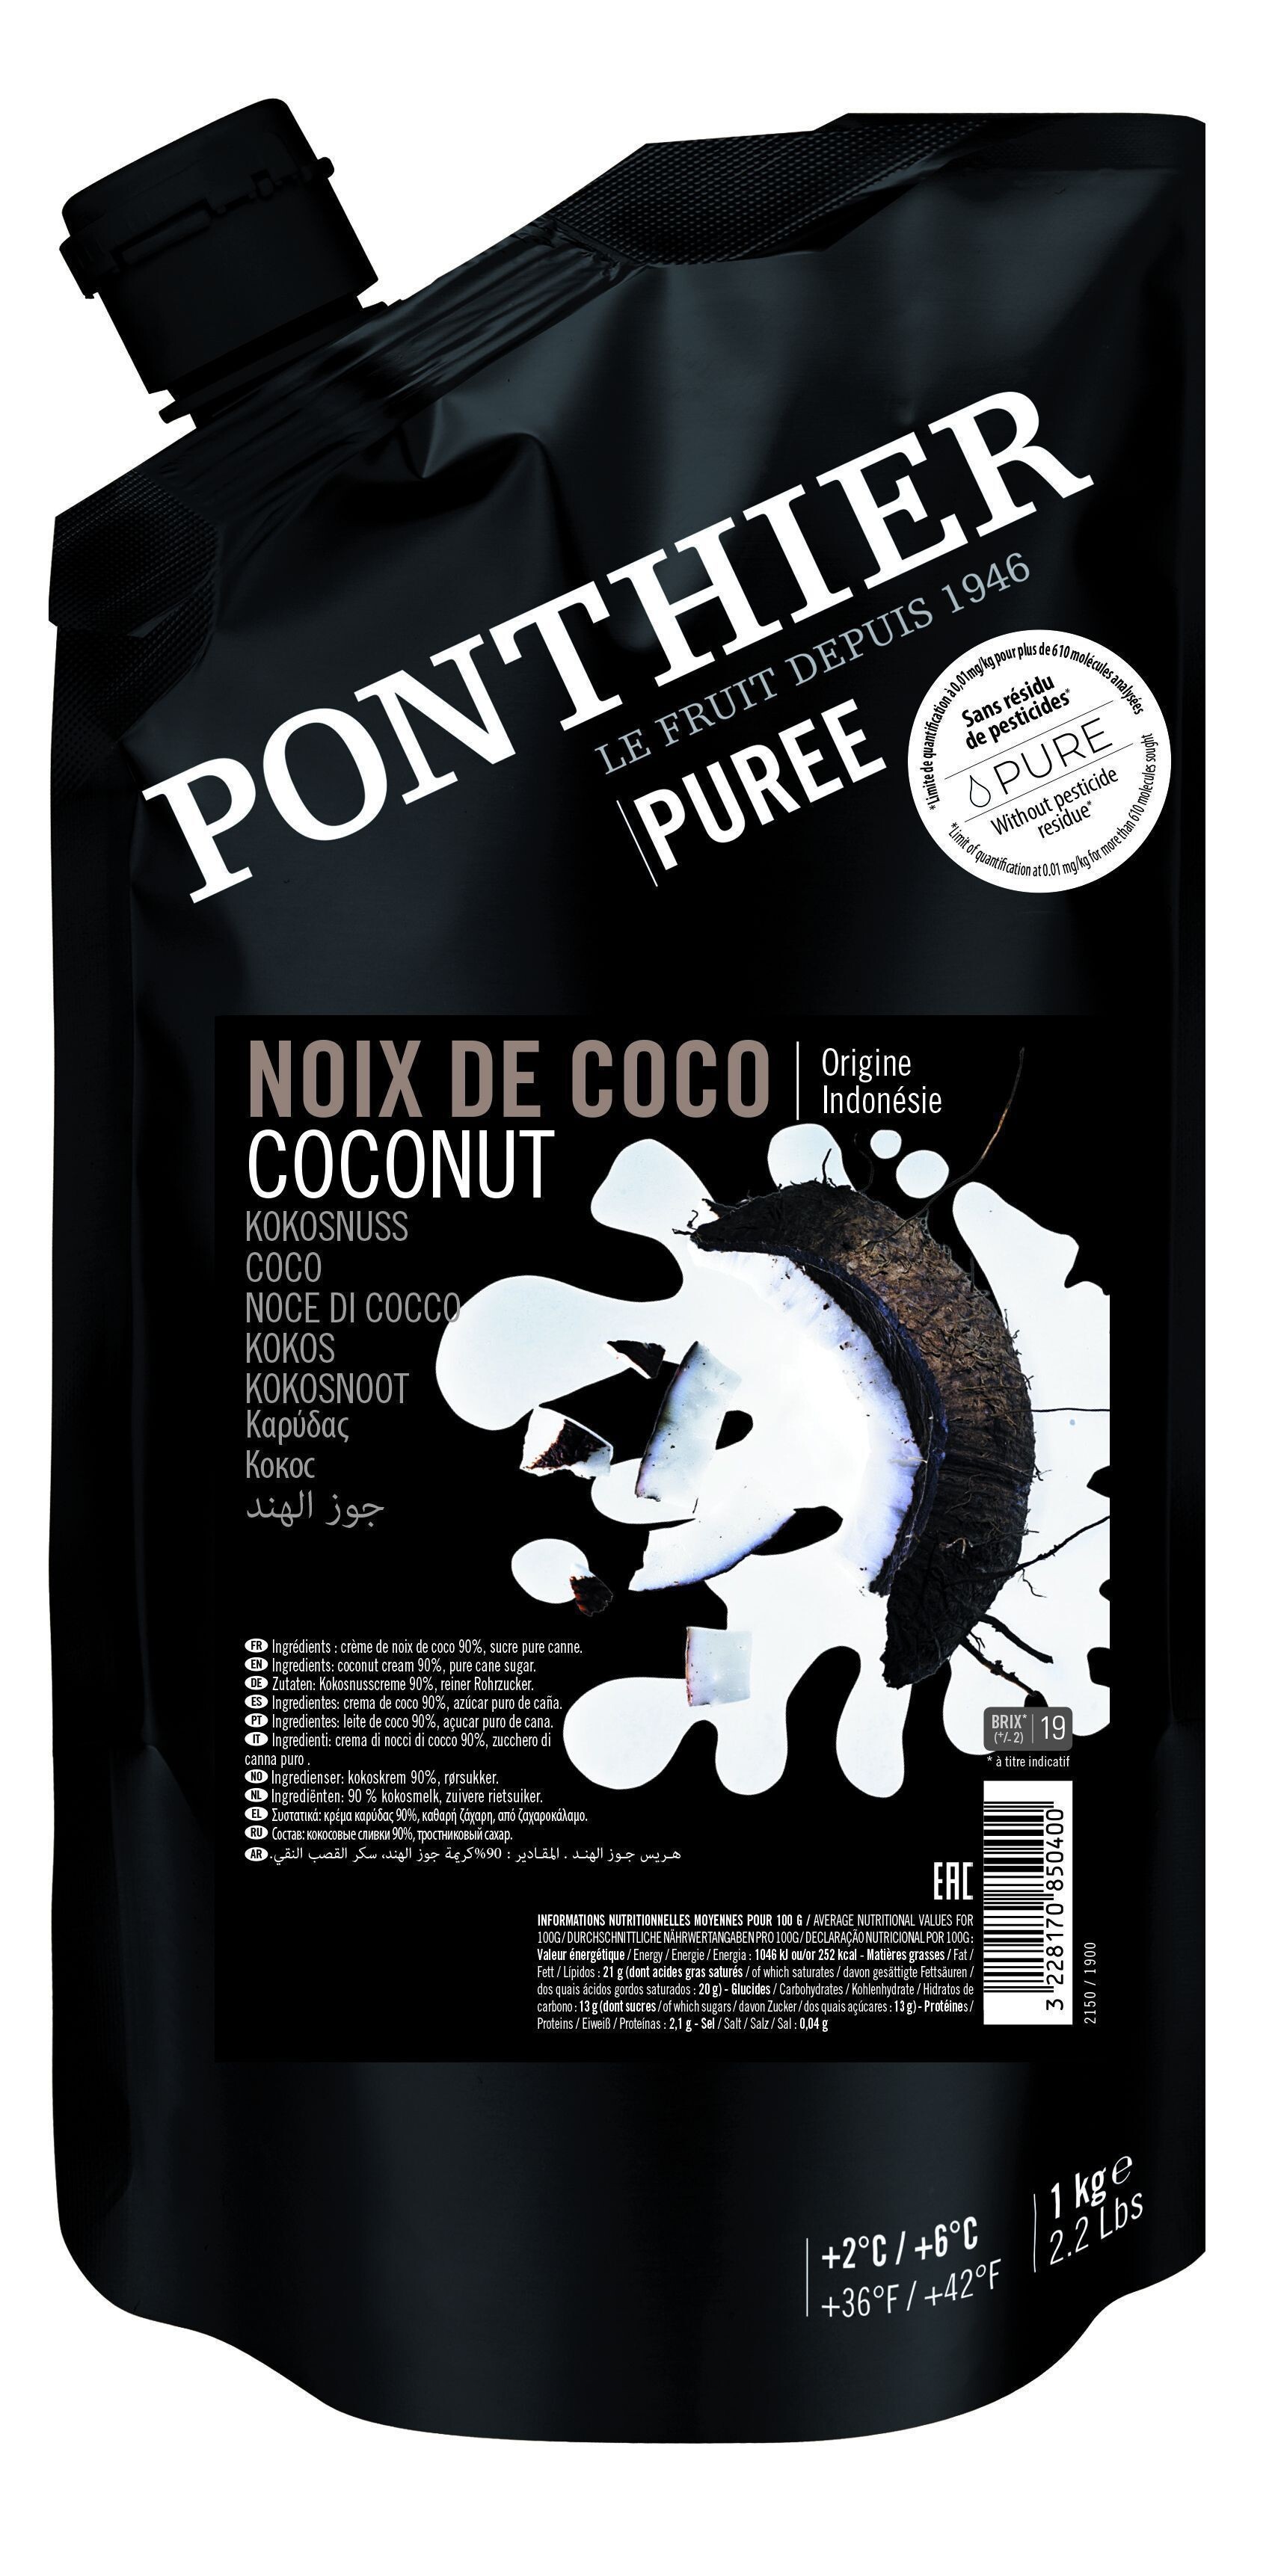 Ponthier Fruit Puree Coconut Intense 1kg